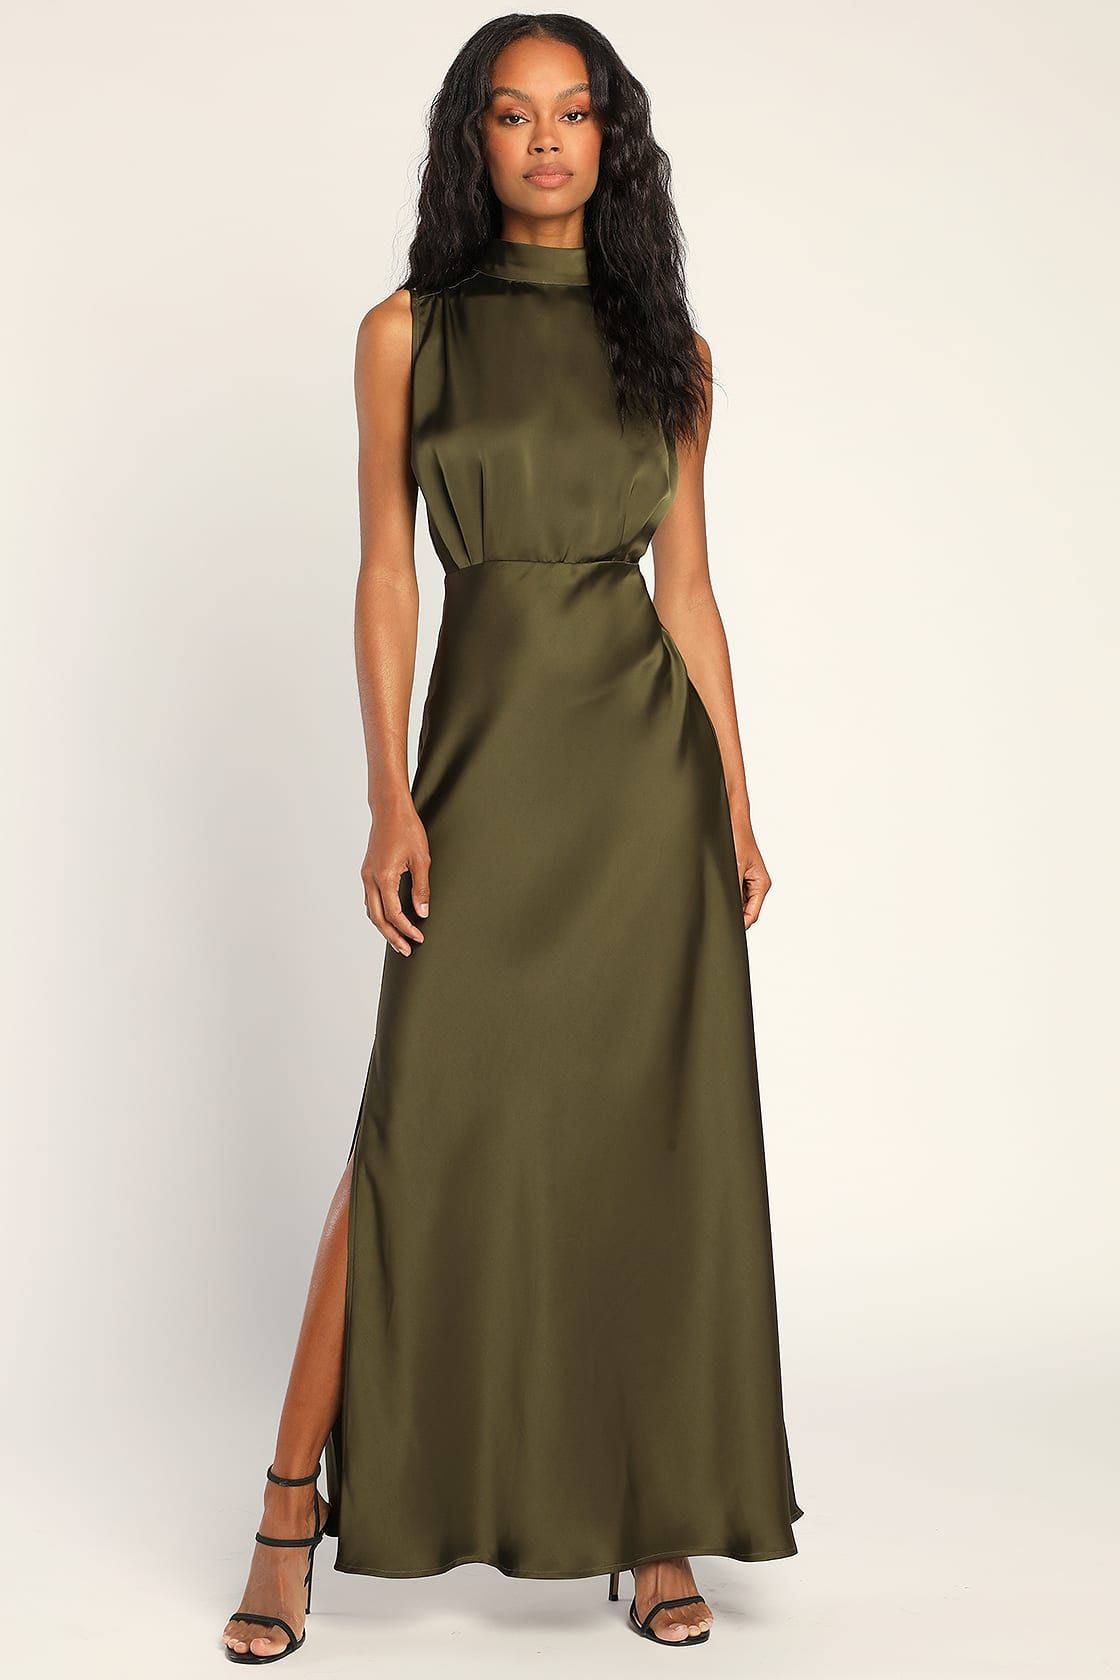 Classic Elegance Olive Satin Sleeveless Mock Neck Maxi Dress | Lulus (US)